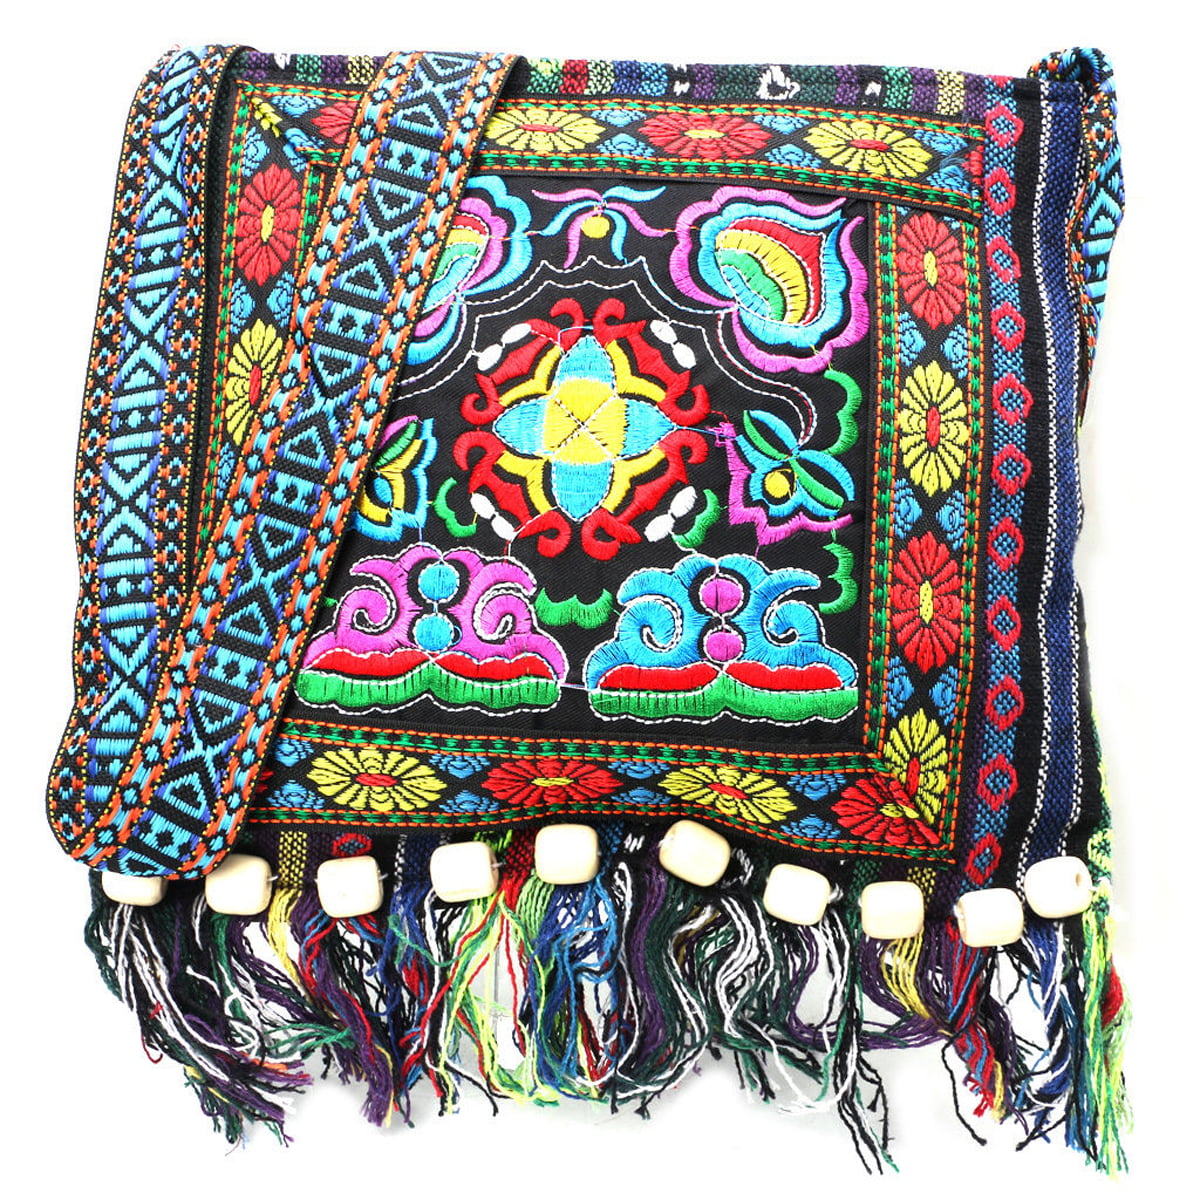 Details about   Hippie hmong Vintage Bohemia Thai embroidery hippie elephant shoulder bag573 